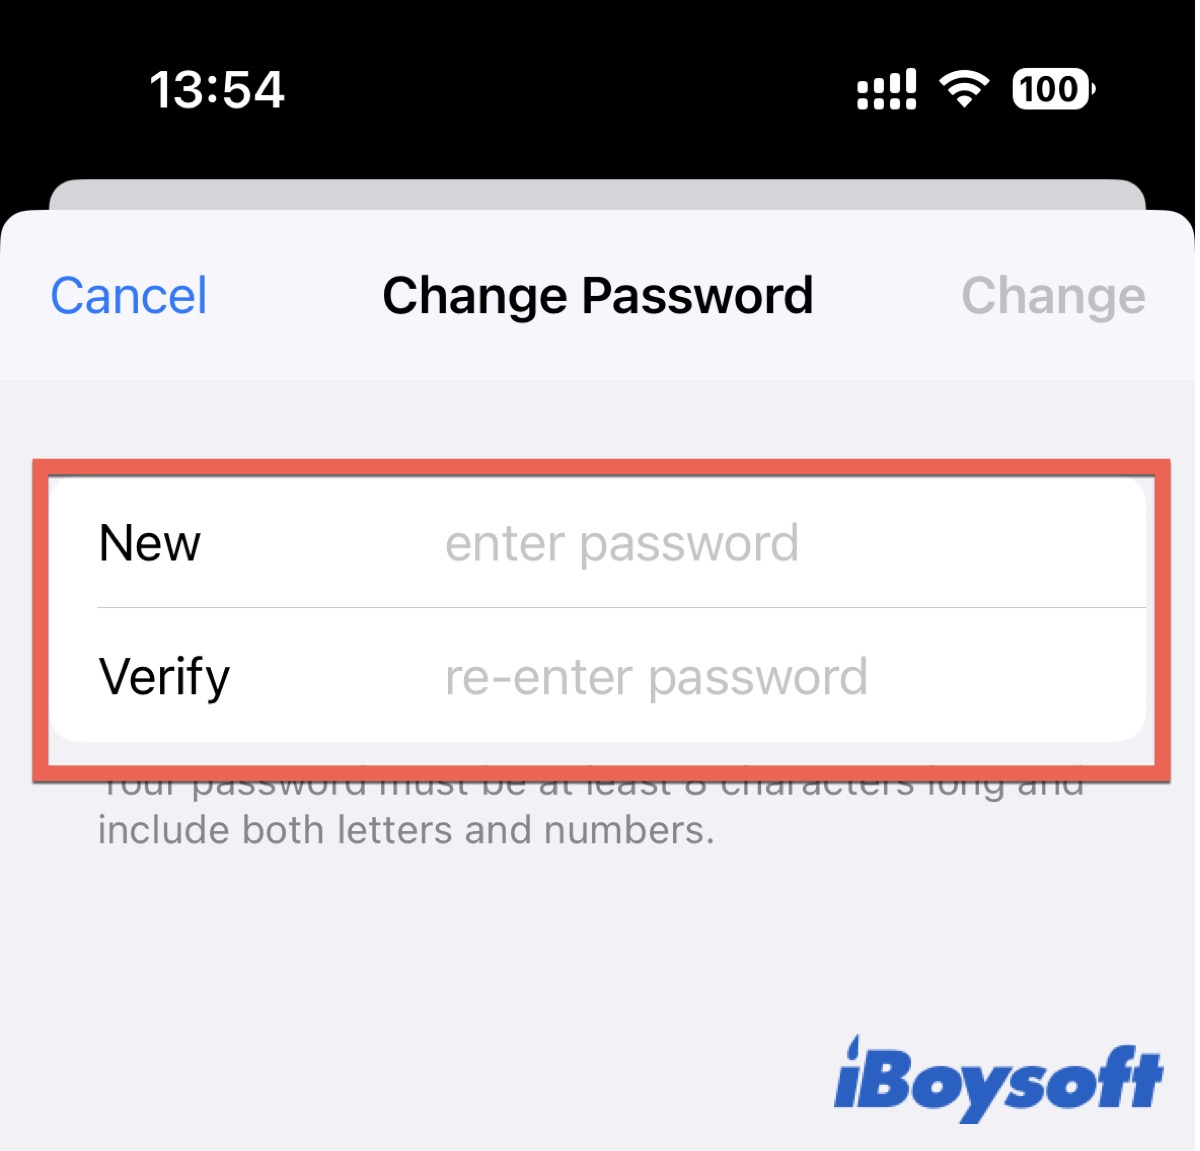 Change password on iPhone